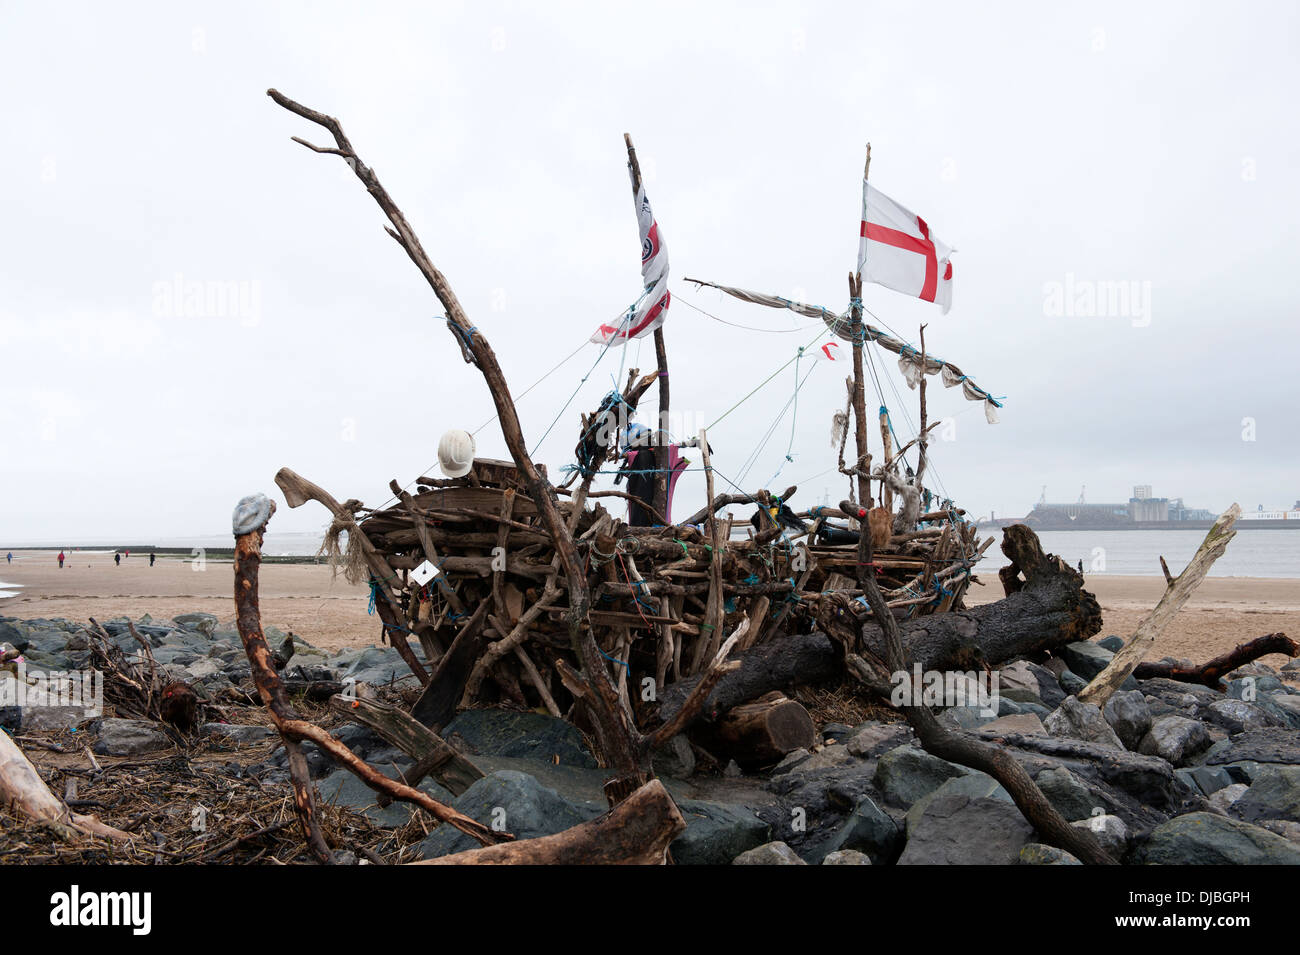 Le bateau pirate construit à partir de bois flotté Driftwood Beach Banque D'Images